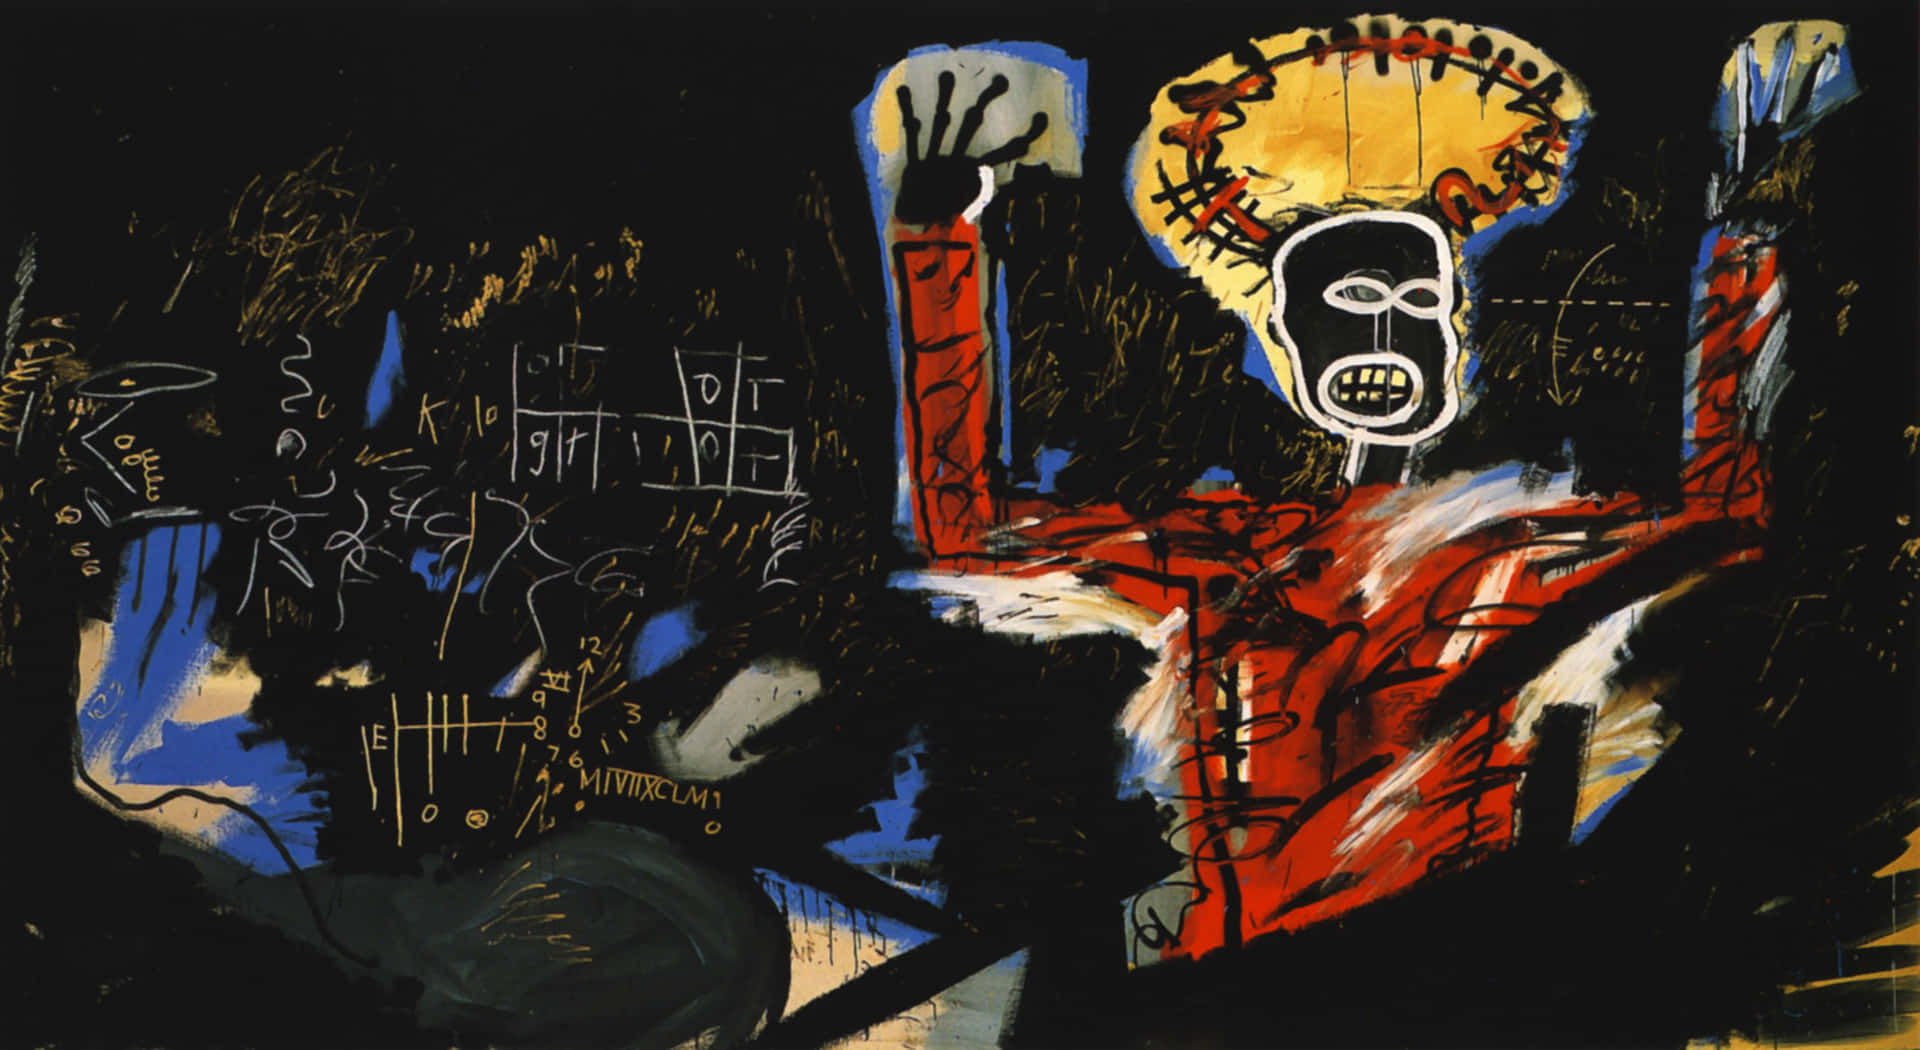 Jean-Michel Basquiat udtrykker kreativitet gennem hans ikoniske kunst. Wallpaper